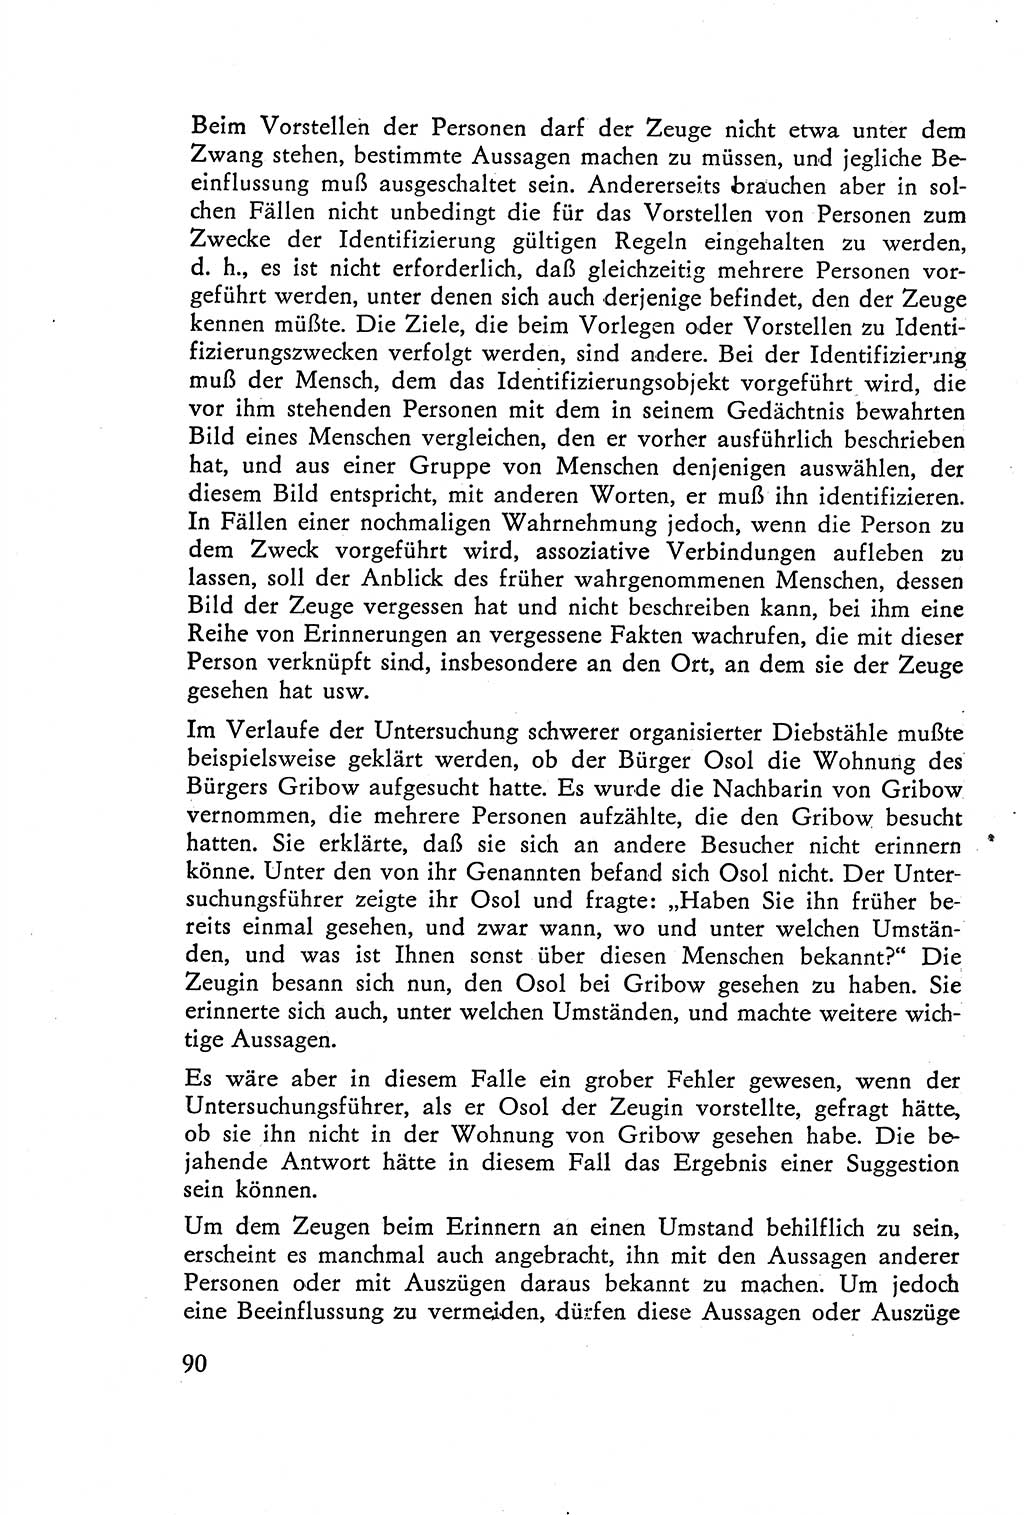 Die Vernehmung [Deutsche Demokratische Republik (DDR)] 1960, Seite 90 (Vern. DDR 1960, S. 90)